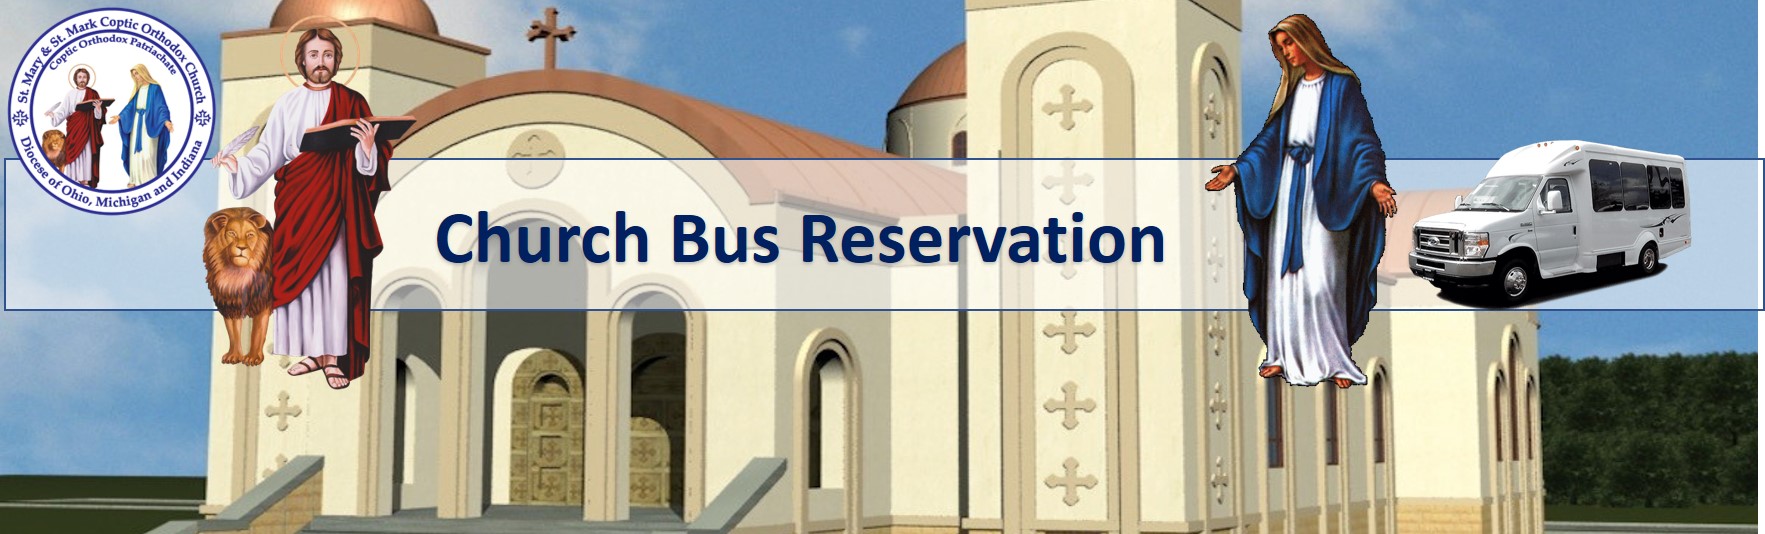 Bus Reservation Form